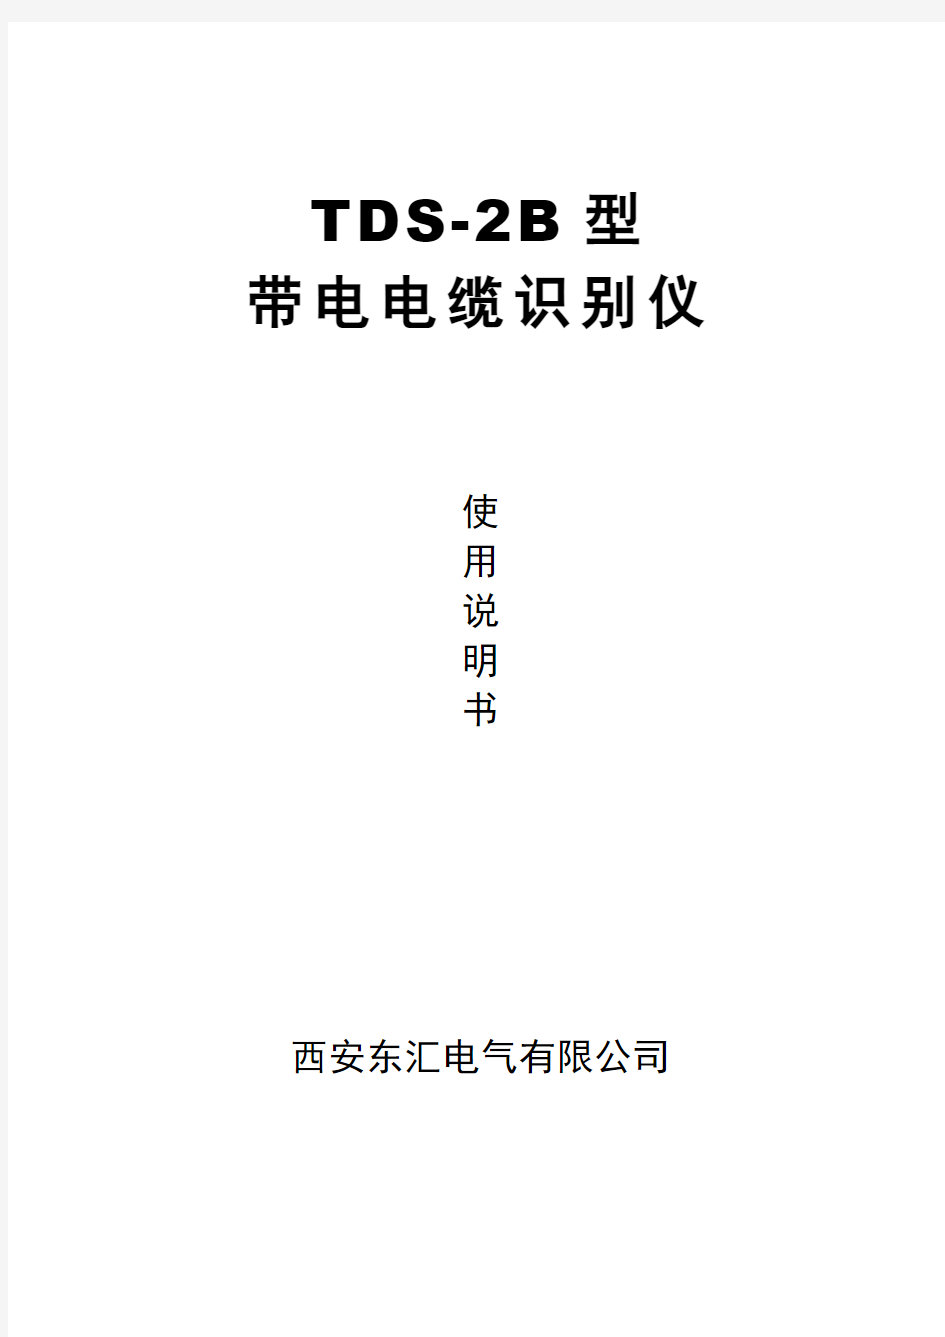 TDS-2B带电电识别仪说明书(西安东汇)